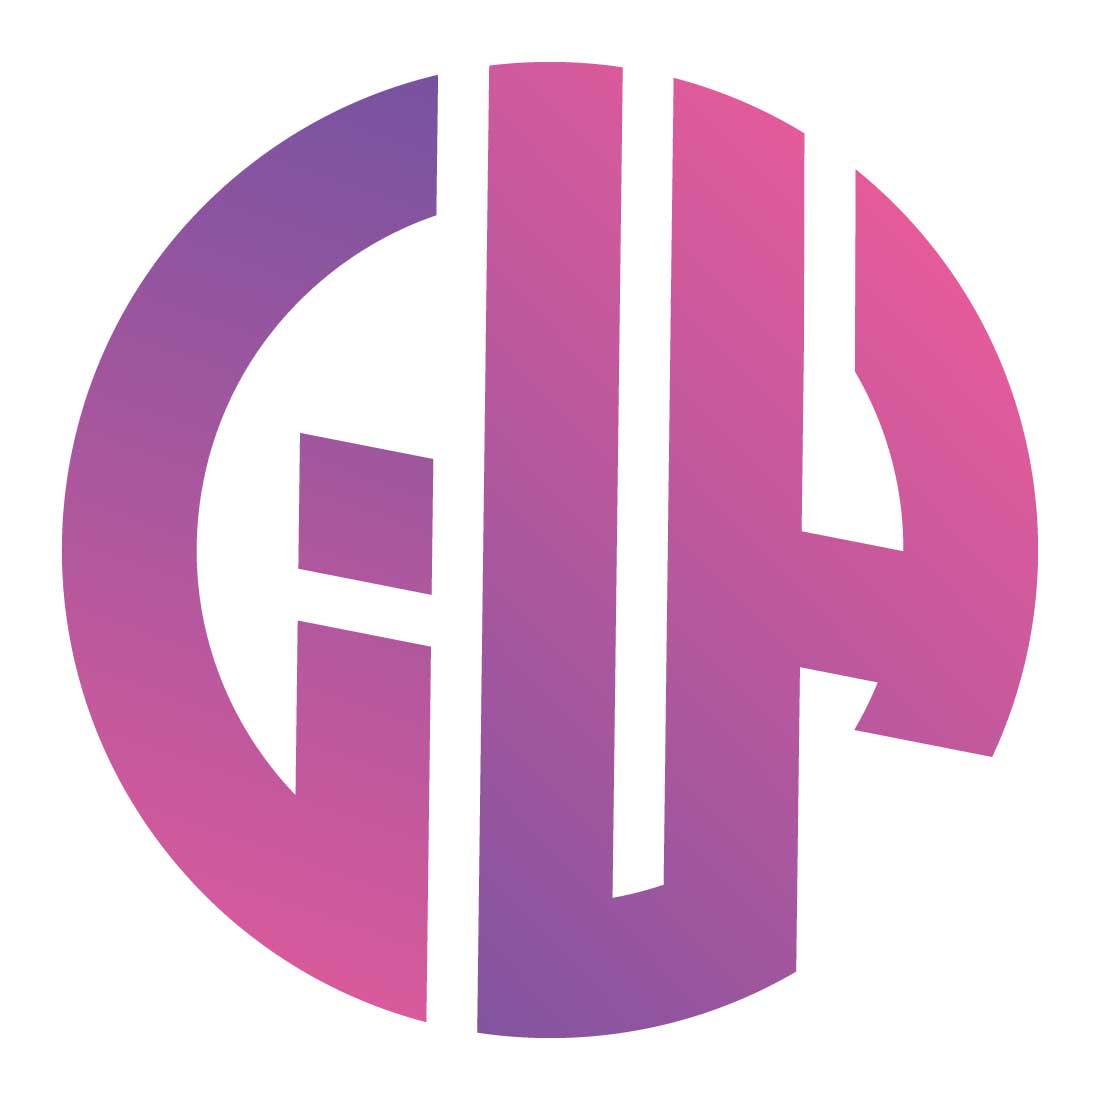 GHA letter momogram logo SVG/EPS/PNG preview image.